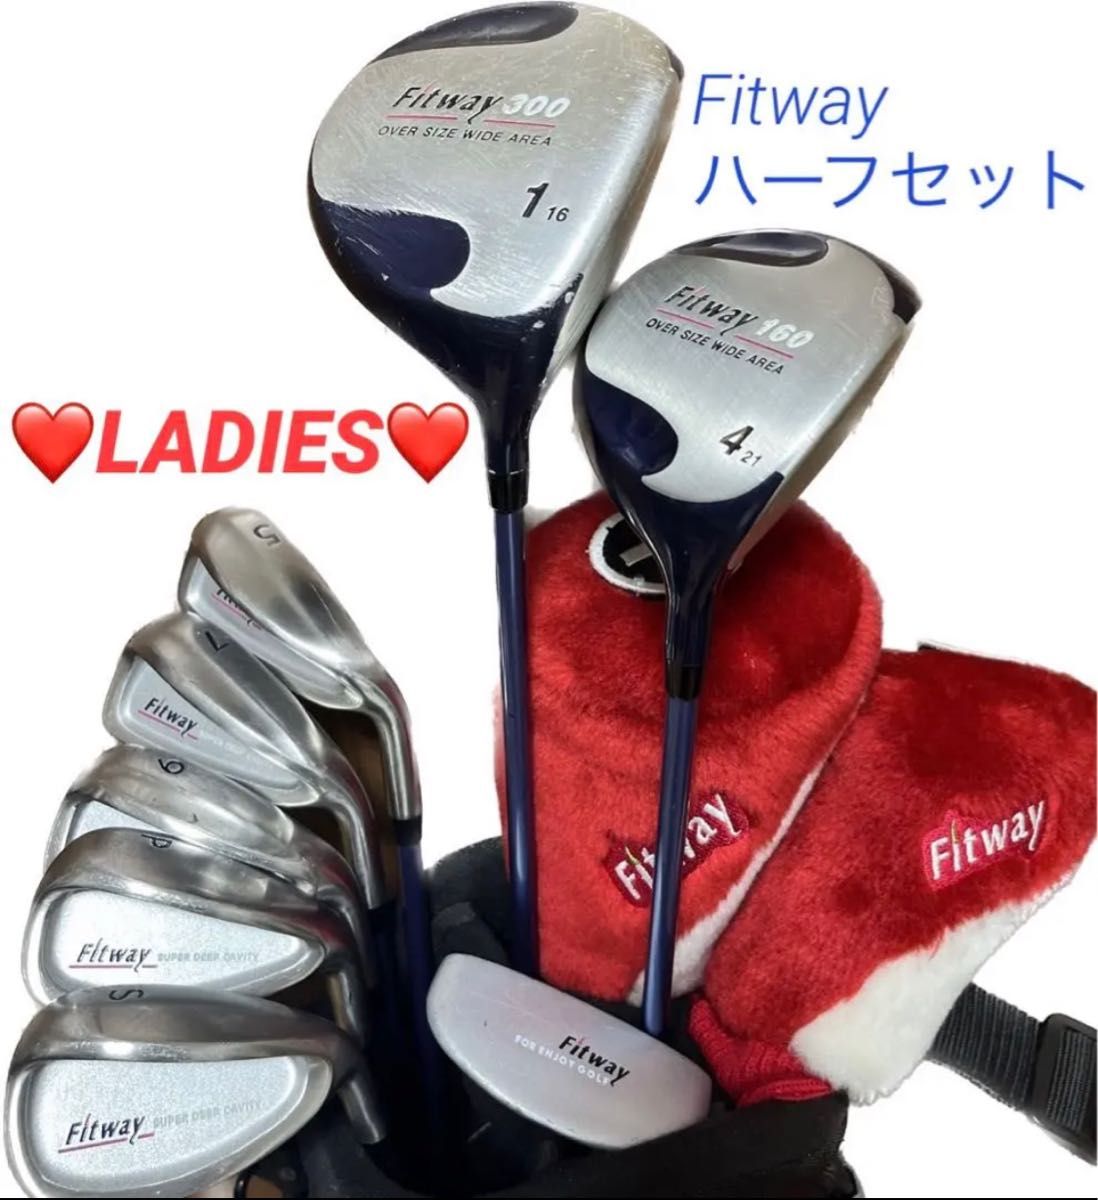 【Fitway】レディースゴルフクラブ8本 ハーフセット キャディバッグ ヘッドカバー おまけ多数 女性 初心者 ビギナー